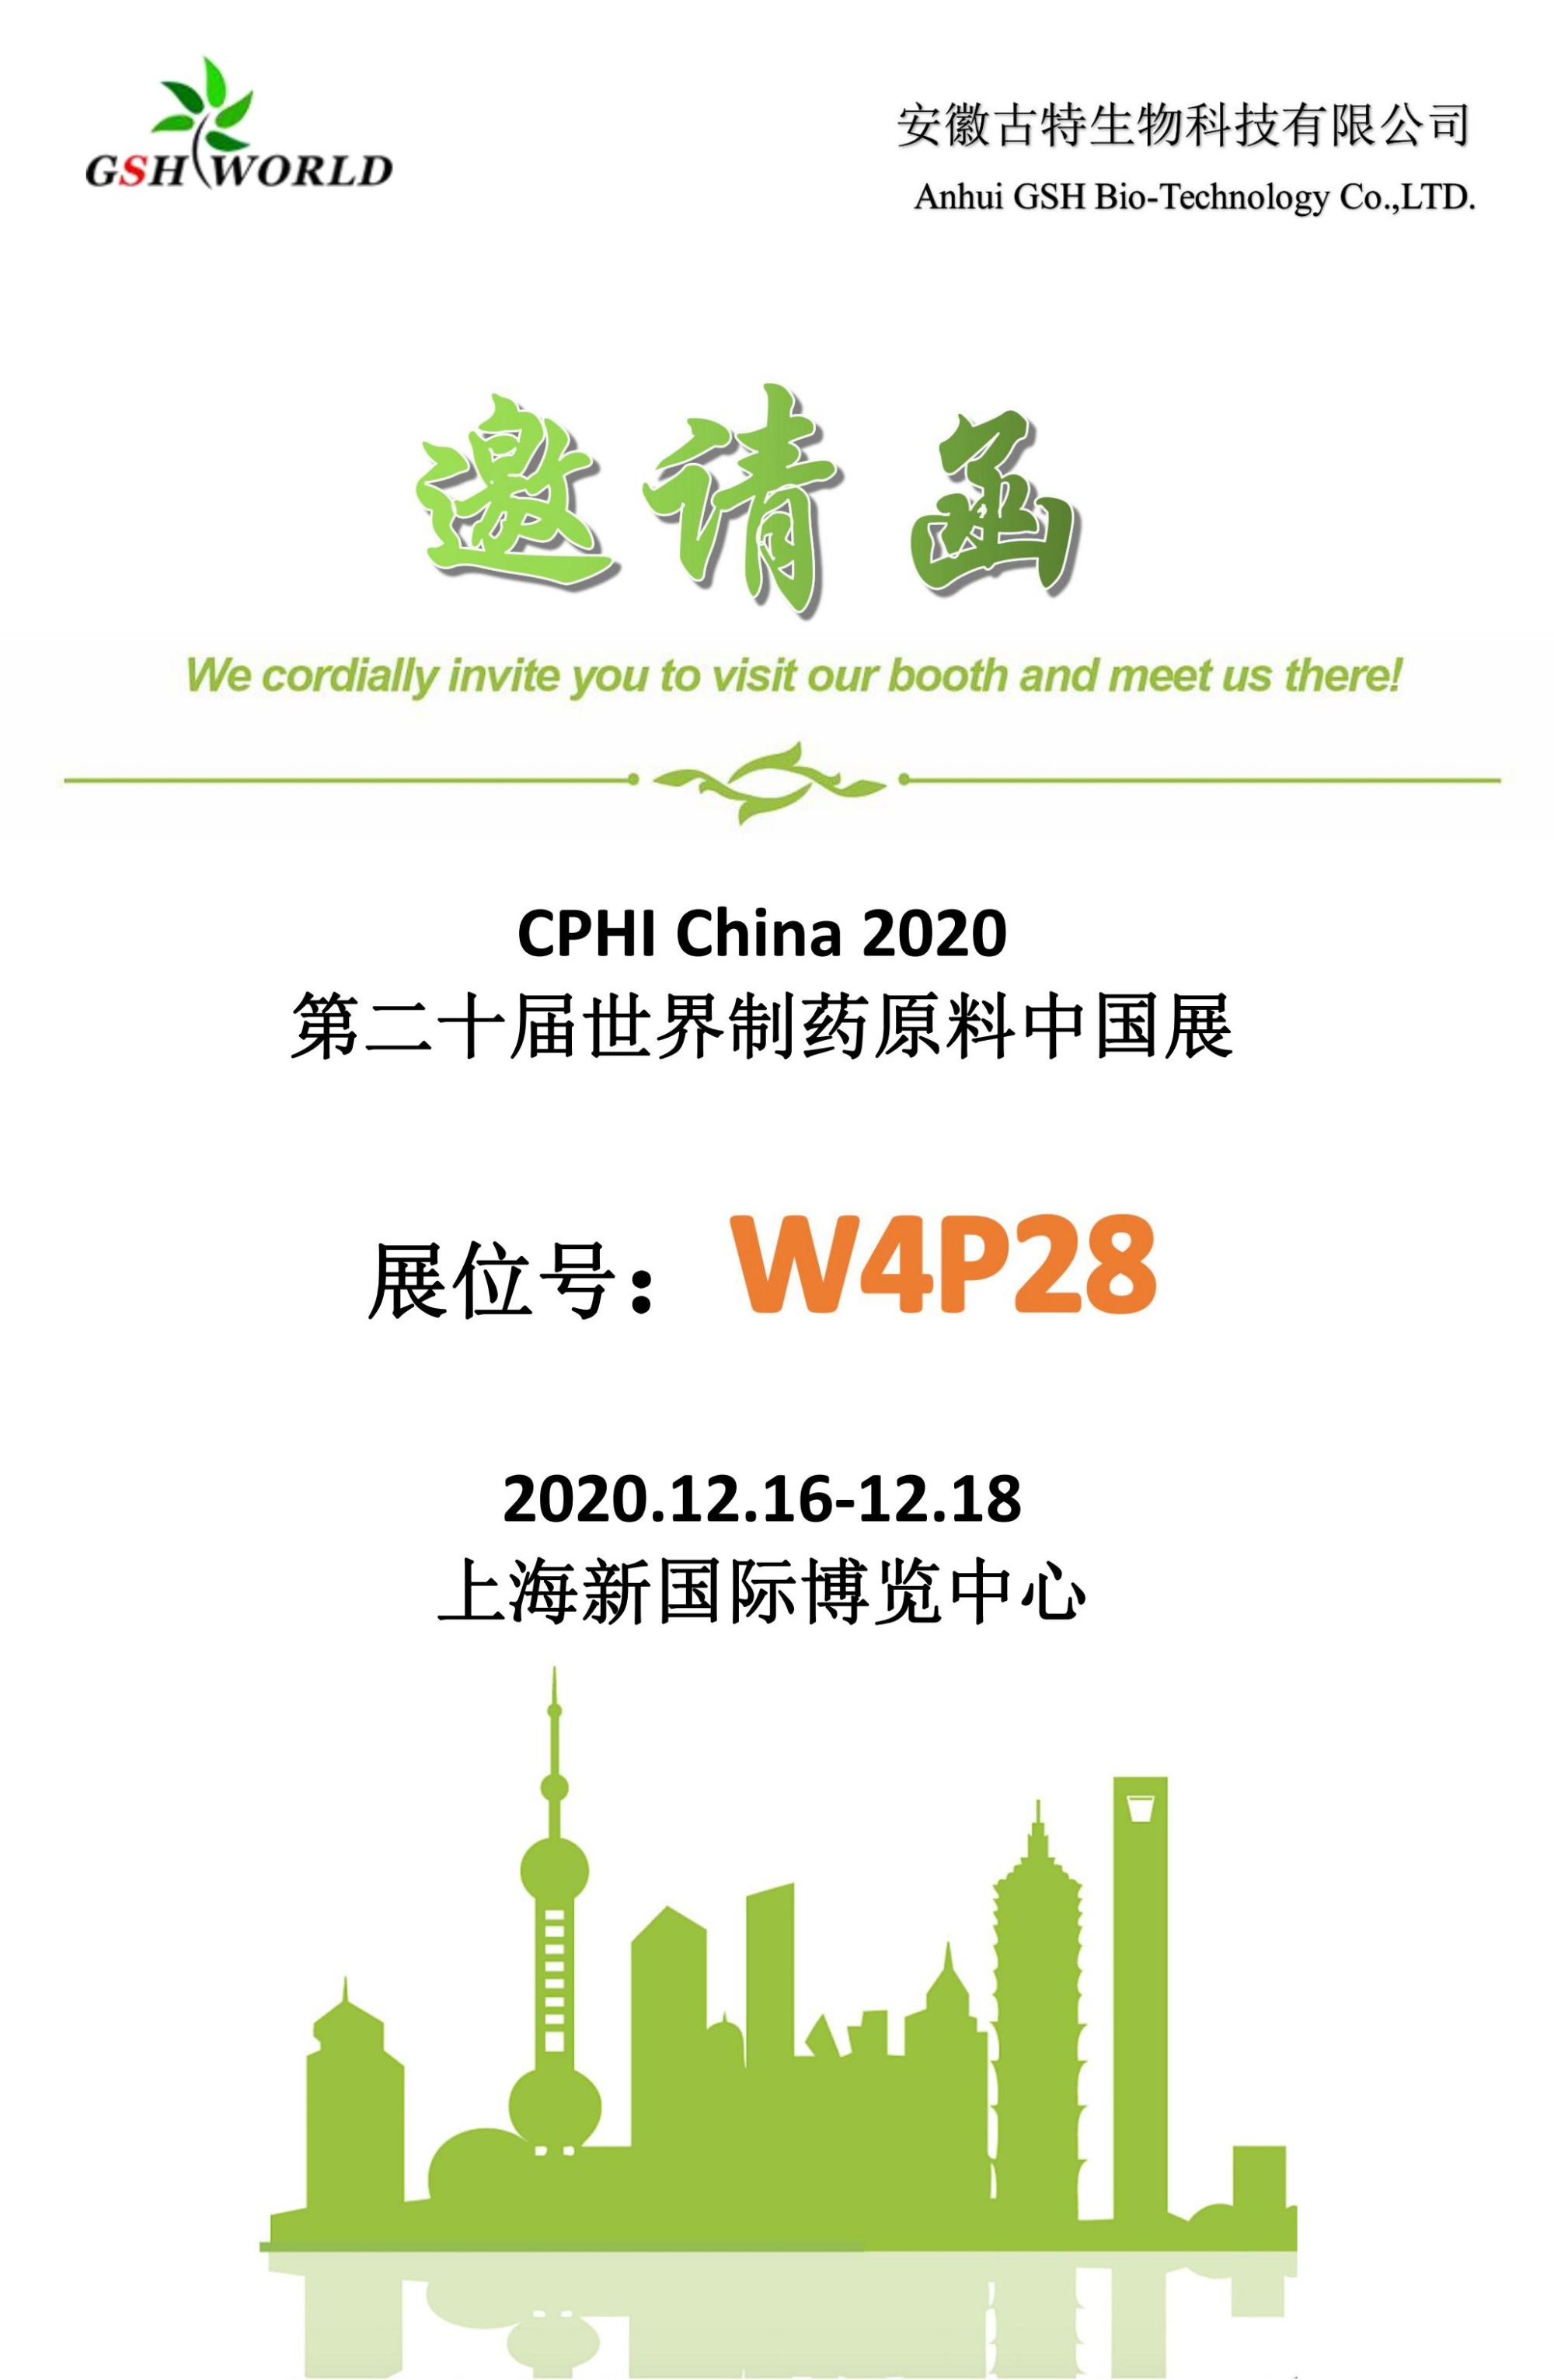 See U in CPHI China 2020